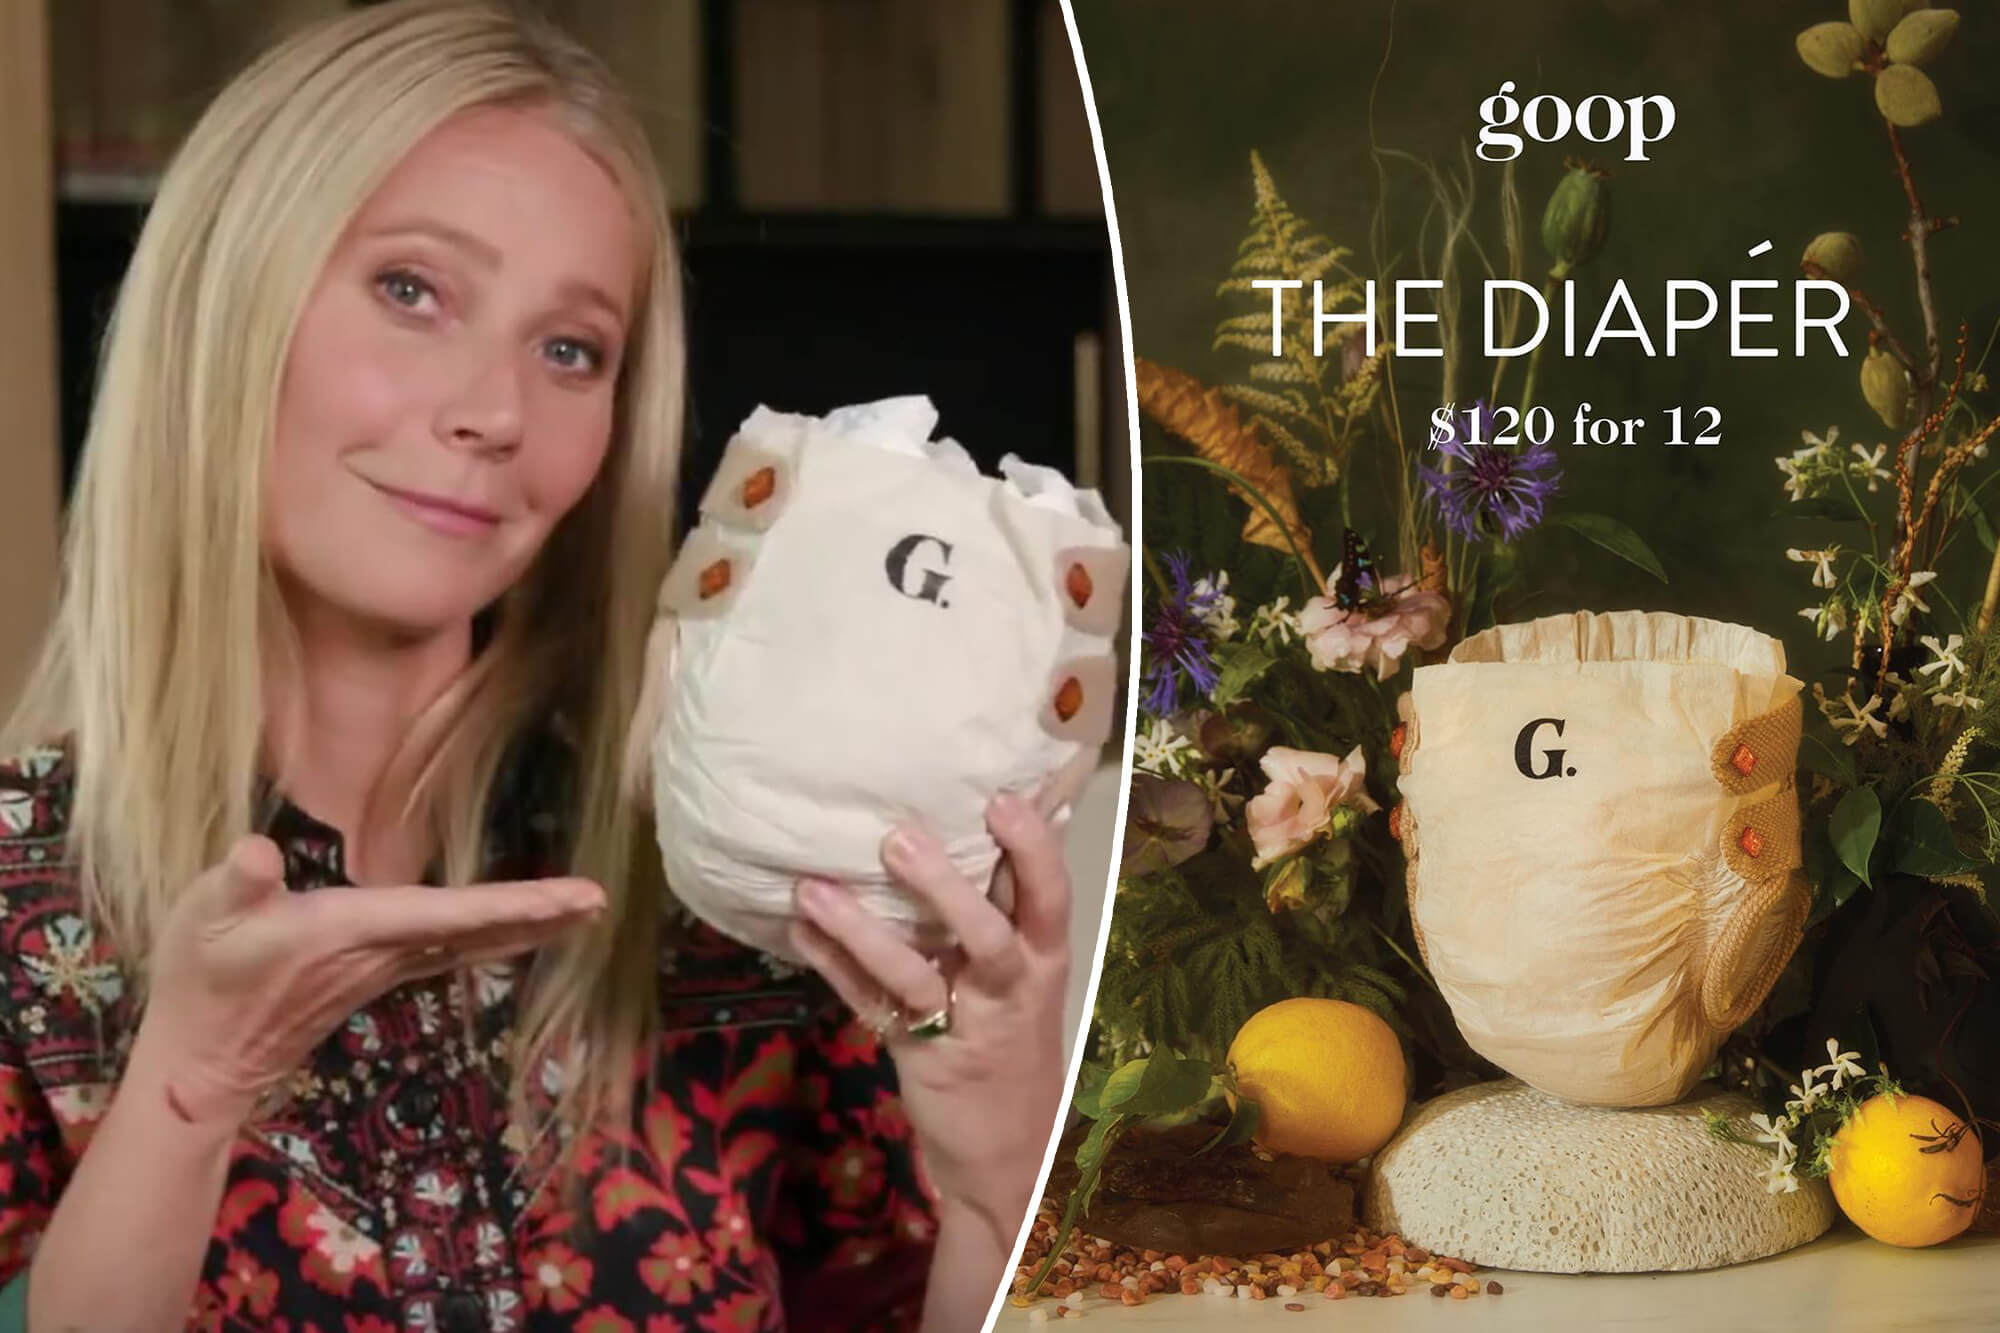 is-goop-really-selling-120-luxury-diapers(1)